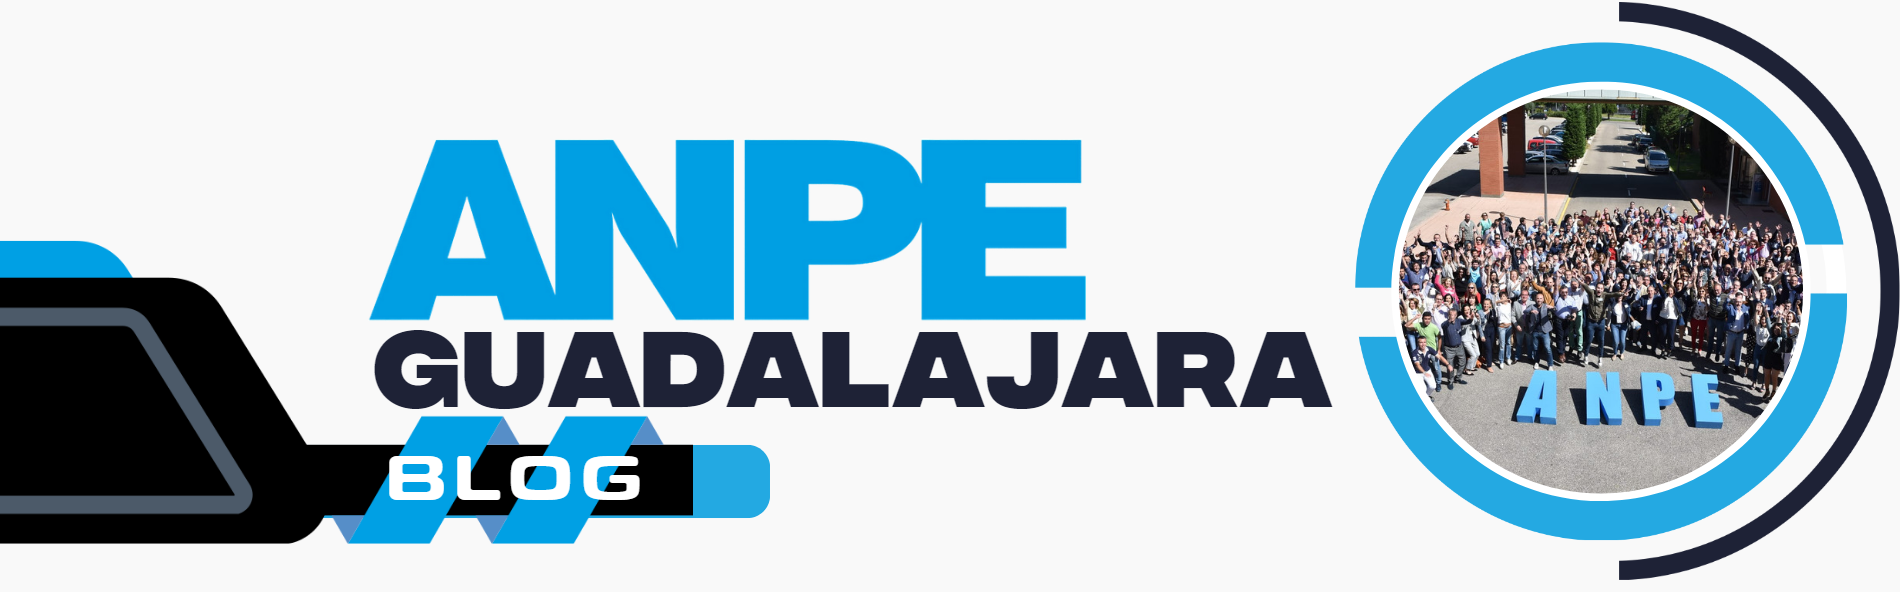 ANPE Guadalajara